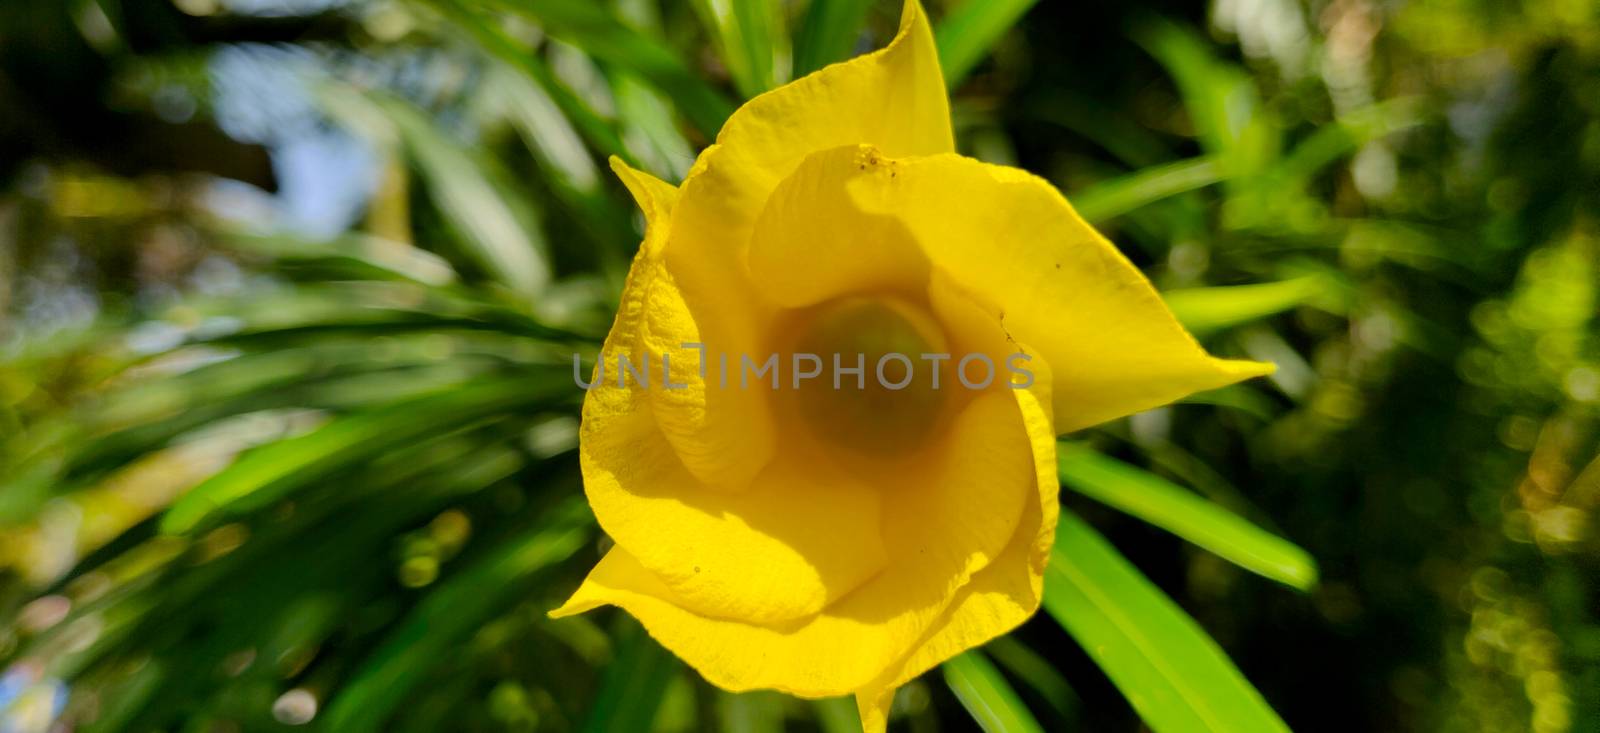 Yellow oleander macro shot in sunlight by mshivangi92